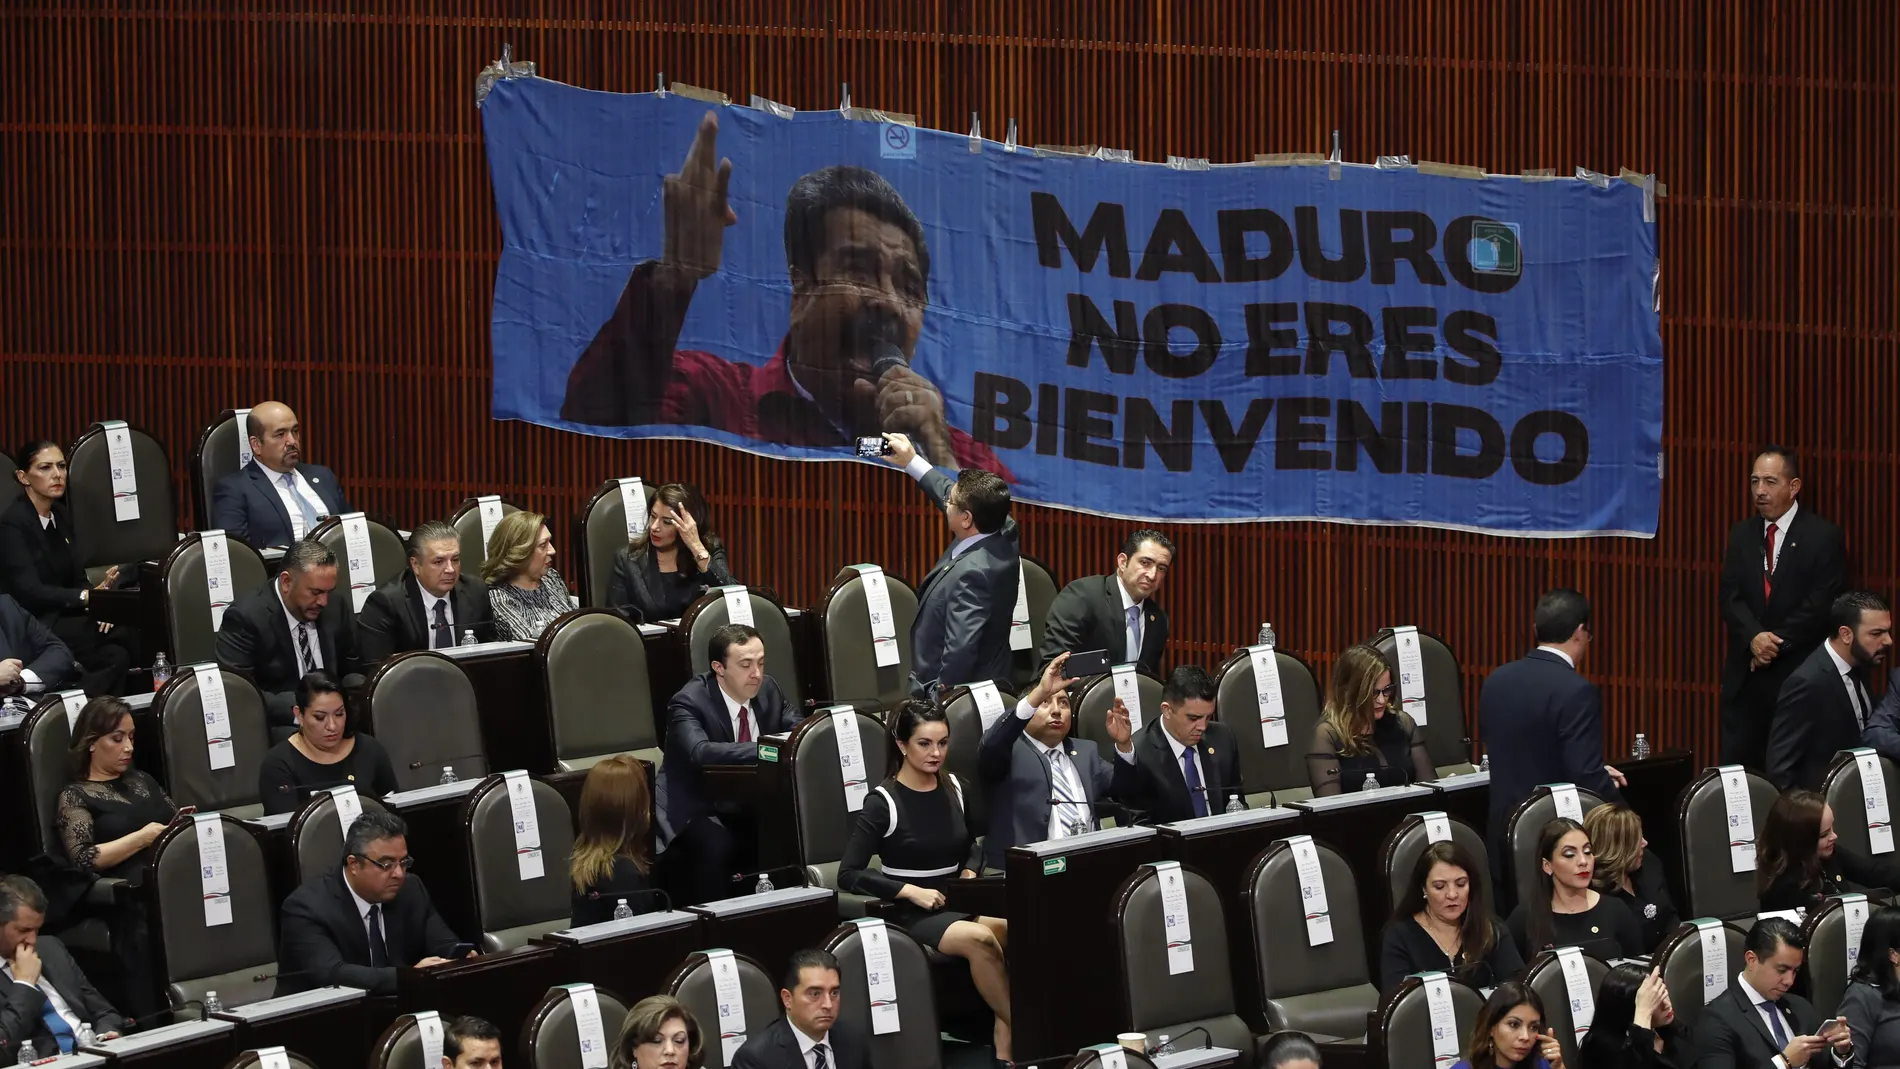  Legisladores del Partido Acción Nacional PAN instalan una pancarta en contra del presidente venezolano, Nicolás Maduro